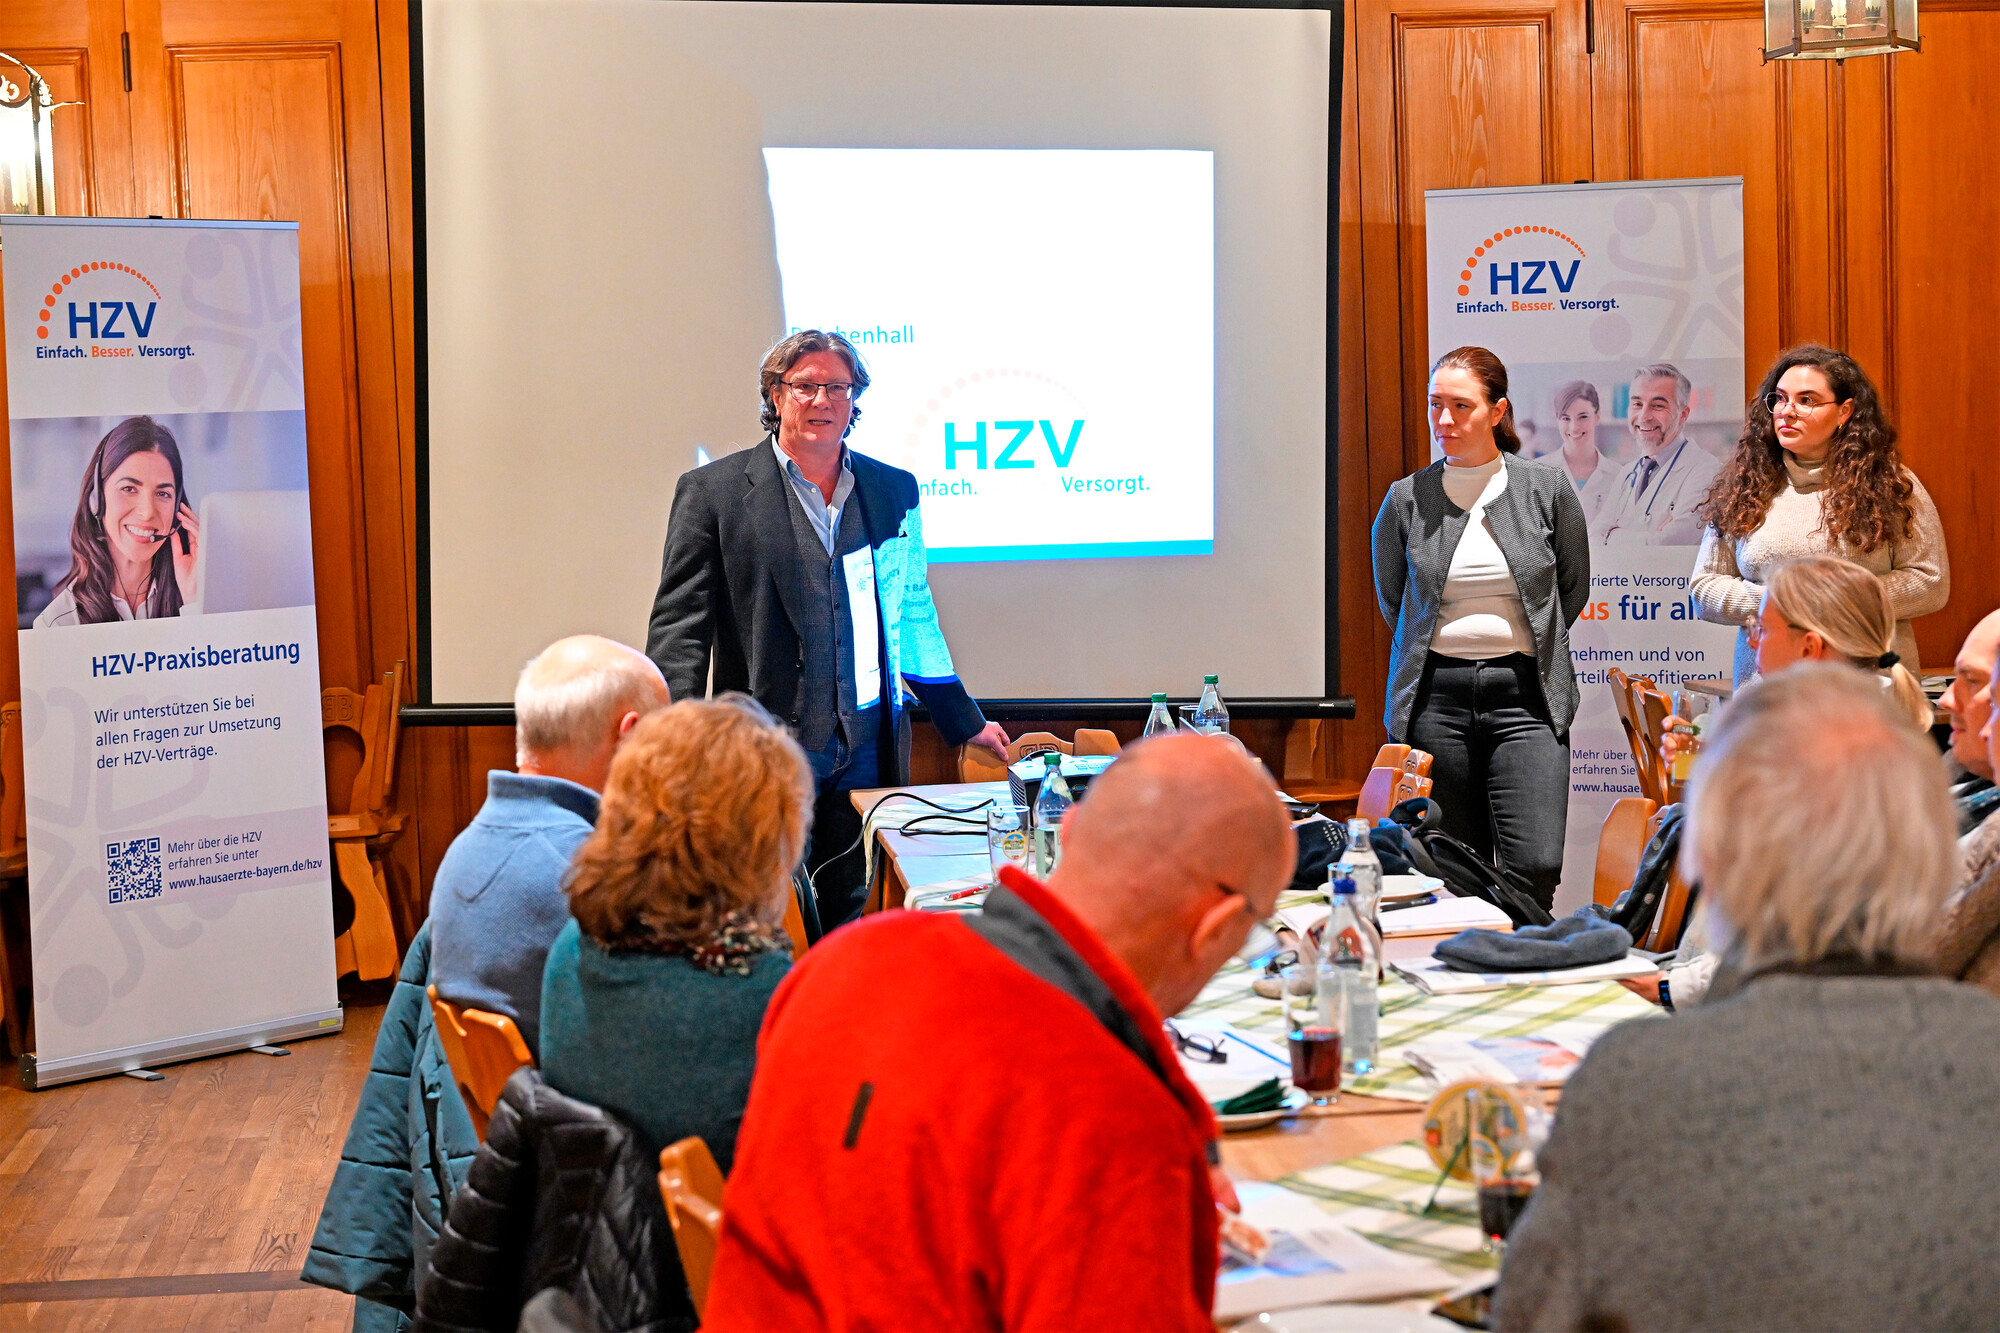 Mit dem neuen Format "HZV vor Ort" bietet der Bayerische Hausärzteverband Hausärztinnen und Hausärzte eine Plattform zum kollegialen Austausch vor Ort und informiert über die Hausarztzentrierte Versorgung als Abrechnungsmodell der Zukunft.